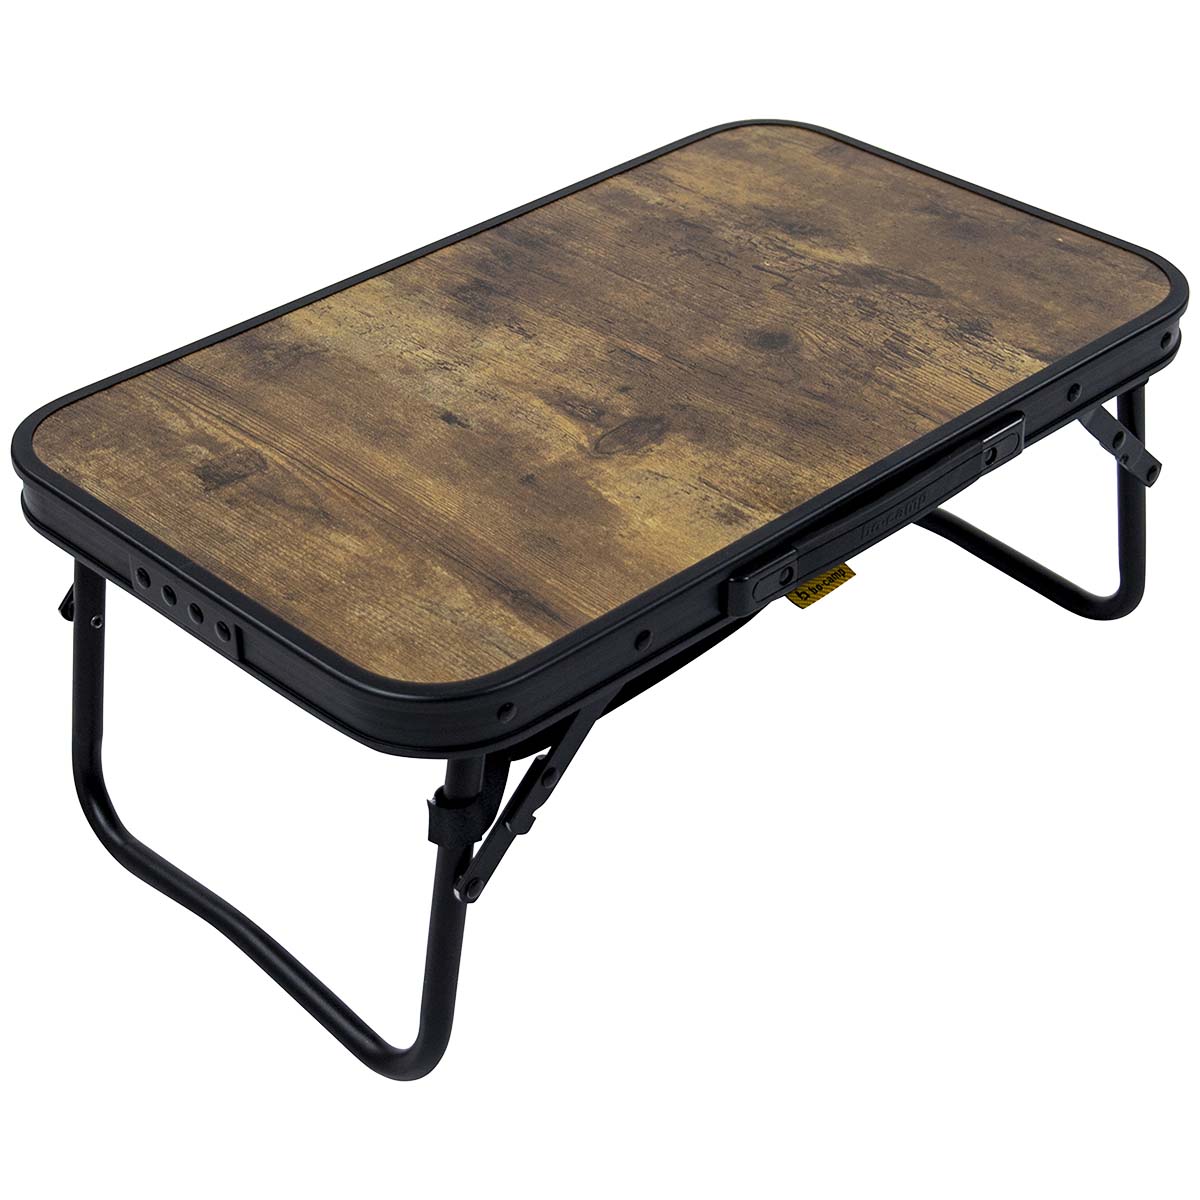 1404190 Een stijlvolle aluminium klaptafel met een industriële uitstraling en houtlook tafelblad. De tafel is zeer compact op te bergen door de klapbare poten. Bovendien is de tafel voorzien van een net onder het MDF tafelblad om spullen in op te bergen.